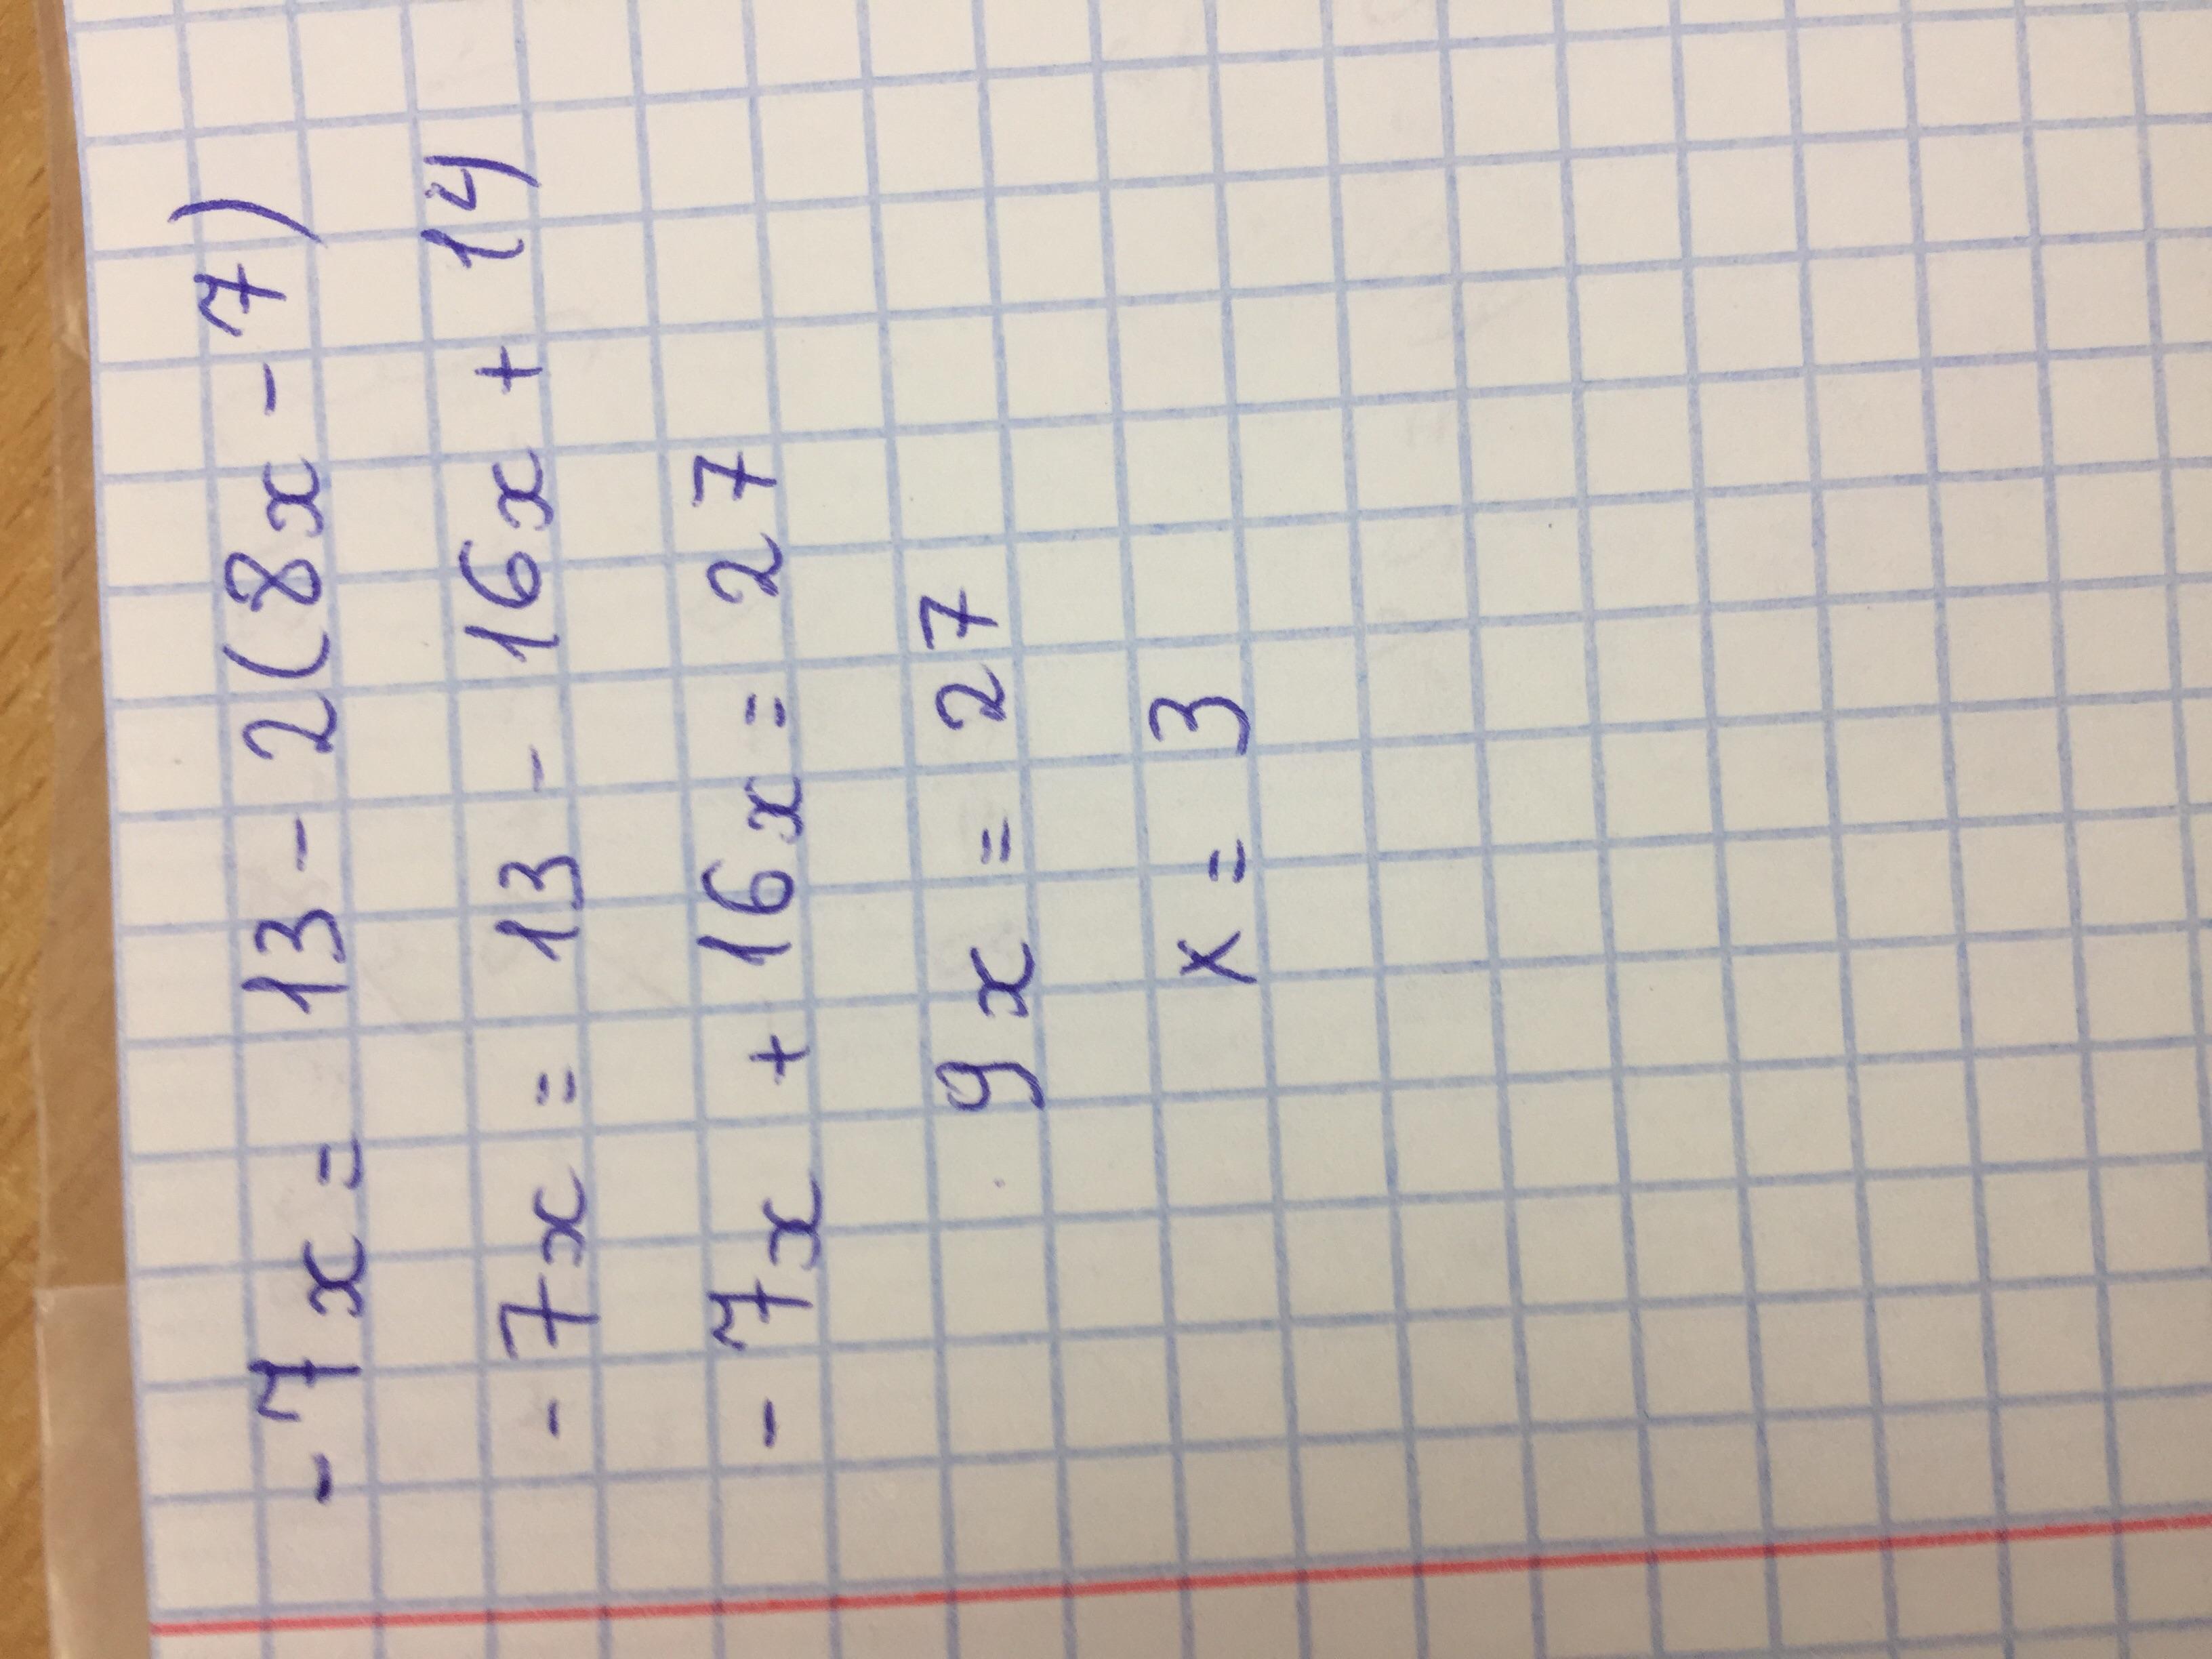 4x 5 13 8 9 решите. Решите уравнение 7х^2+8-13х=8х-6. -7х=13-2(8х-7). 9 4х 7 8х +0.52. Решить уравнение -7х=13-2(8х-7).